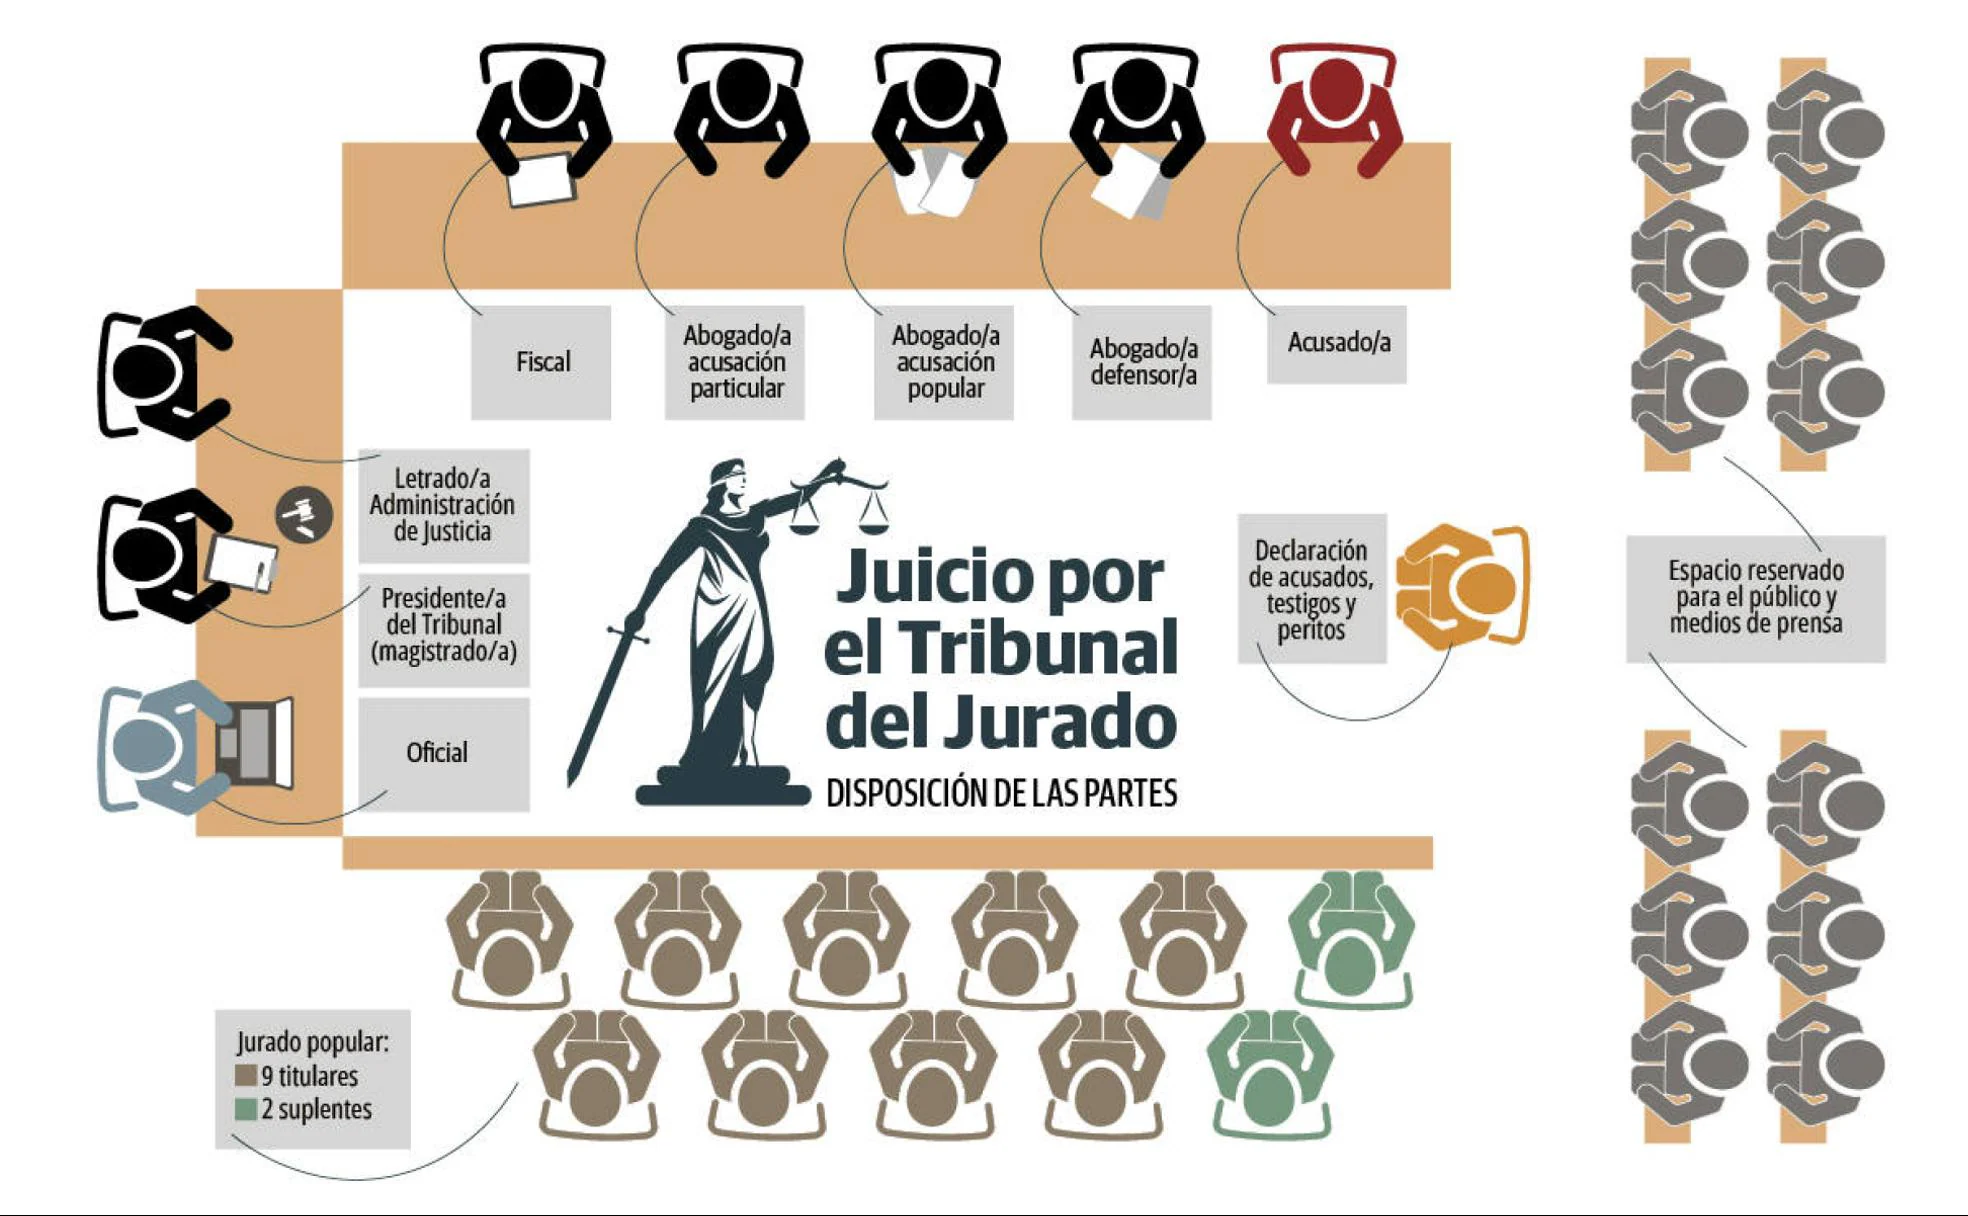 Infografía de la disposición de las partes en un juicio por el Tribunal del Jurado en España.